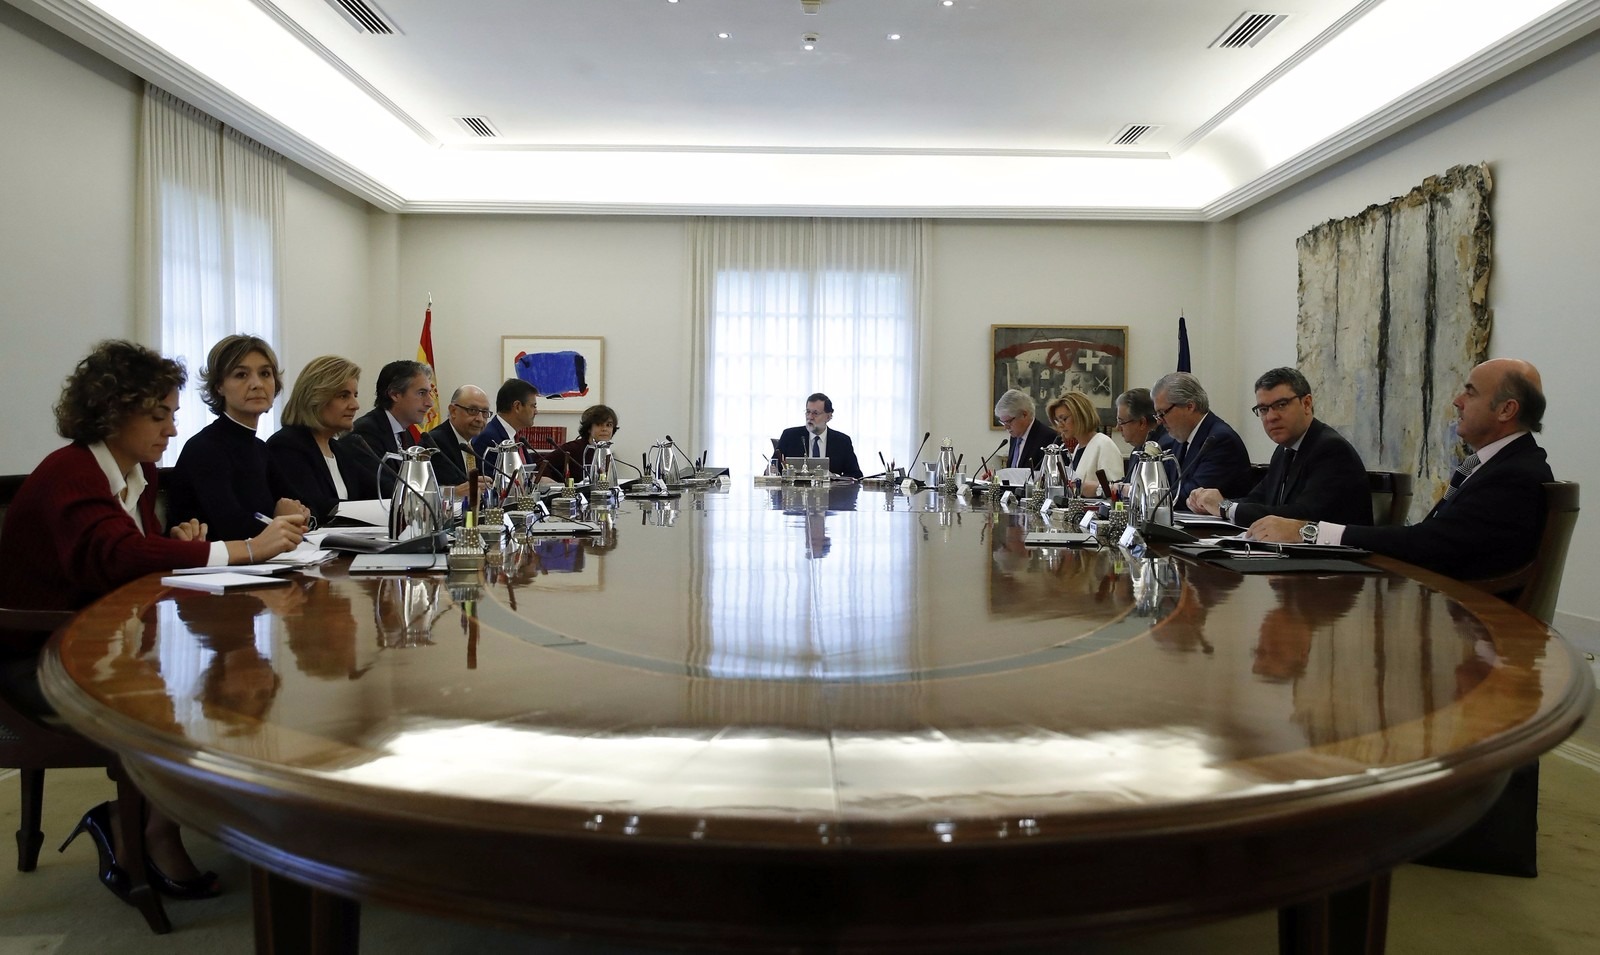 O primeiro-ministro Mariano Rajoy na reunião com o Conselho de Ministros da Espanha na manhã deste sábado (21) (Foto: Juan Carlos Hidalgo/Reuters)